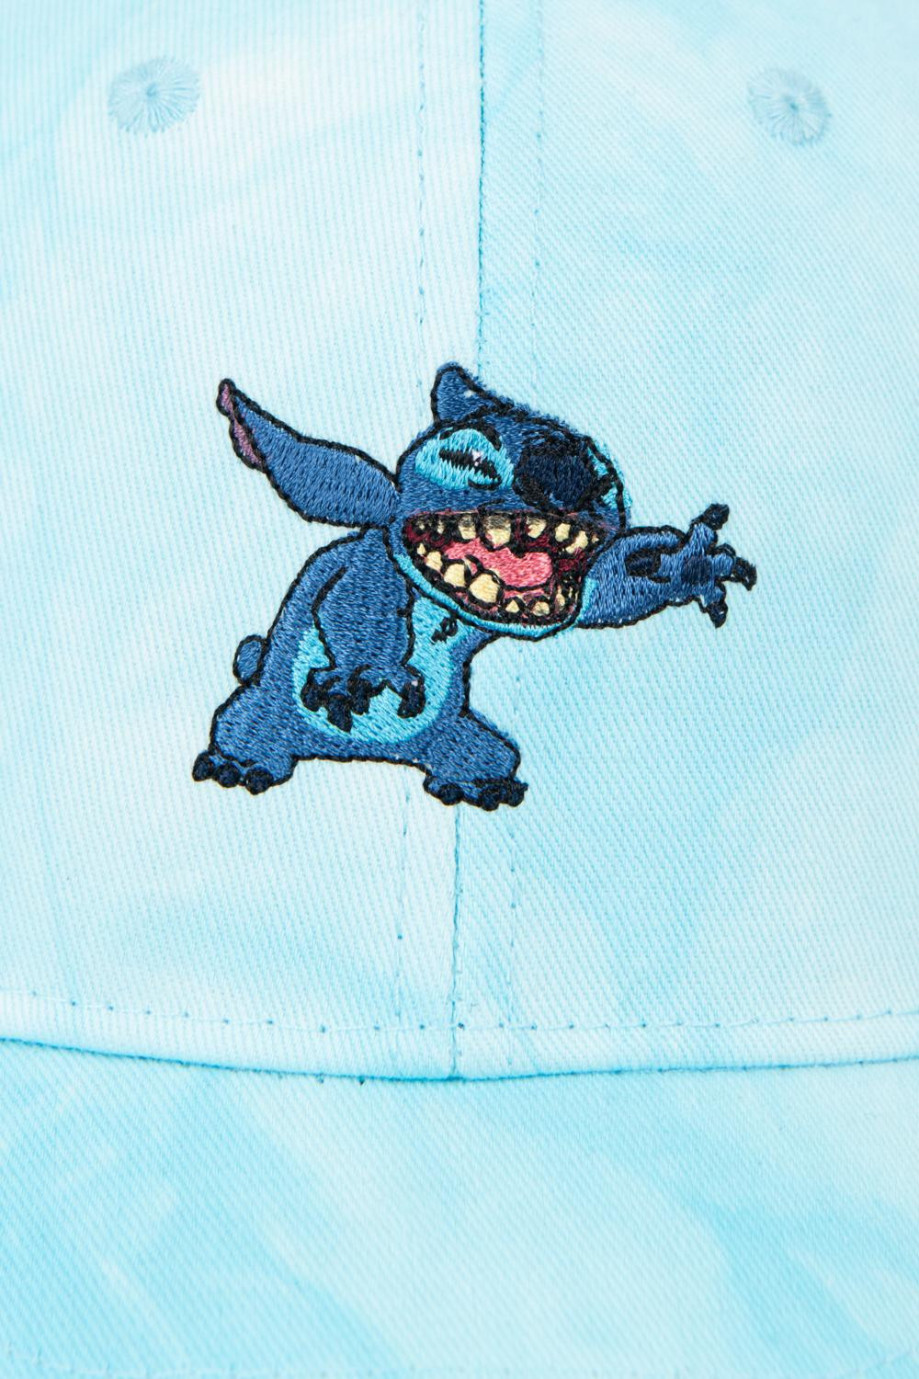 Cachucha beisbolera azul clara tie dye con diseño de Lilo & Stitch